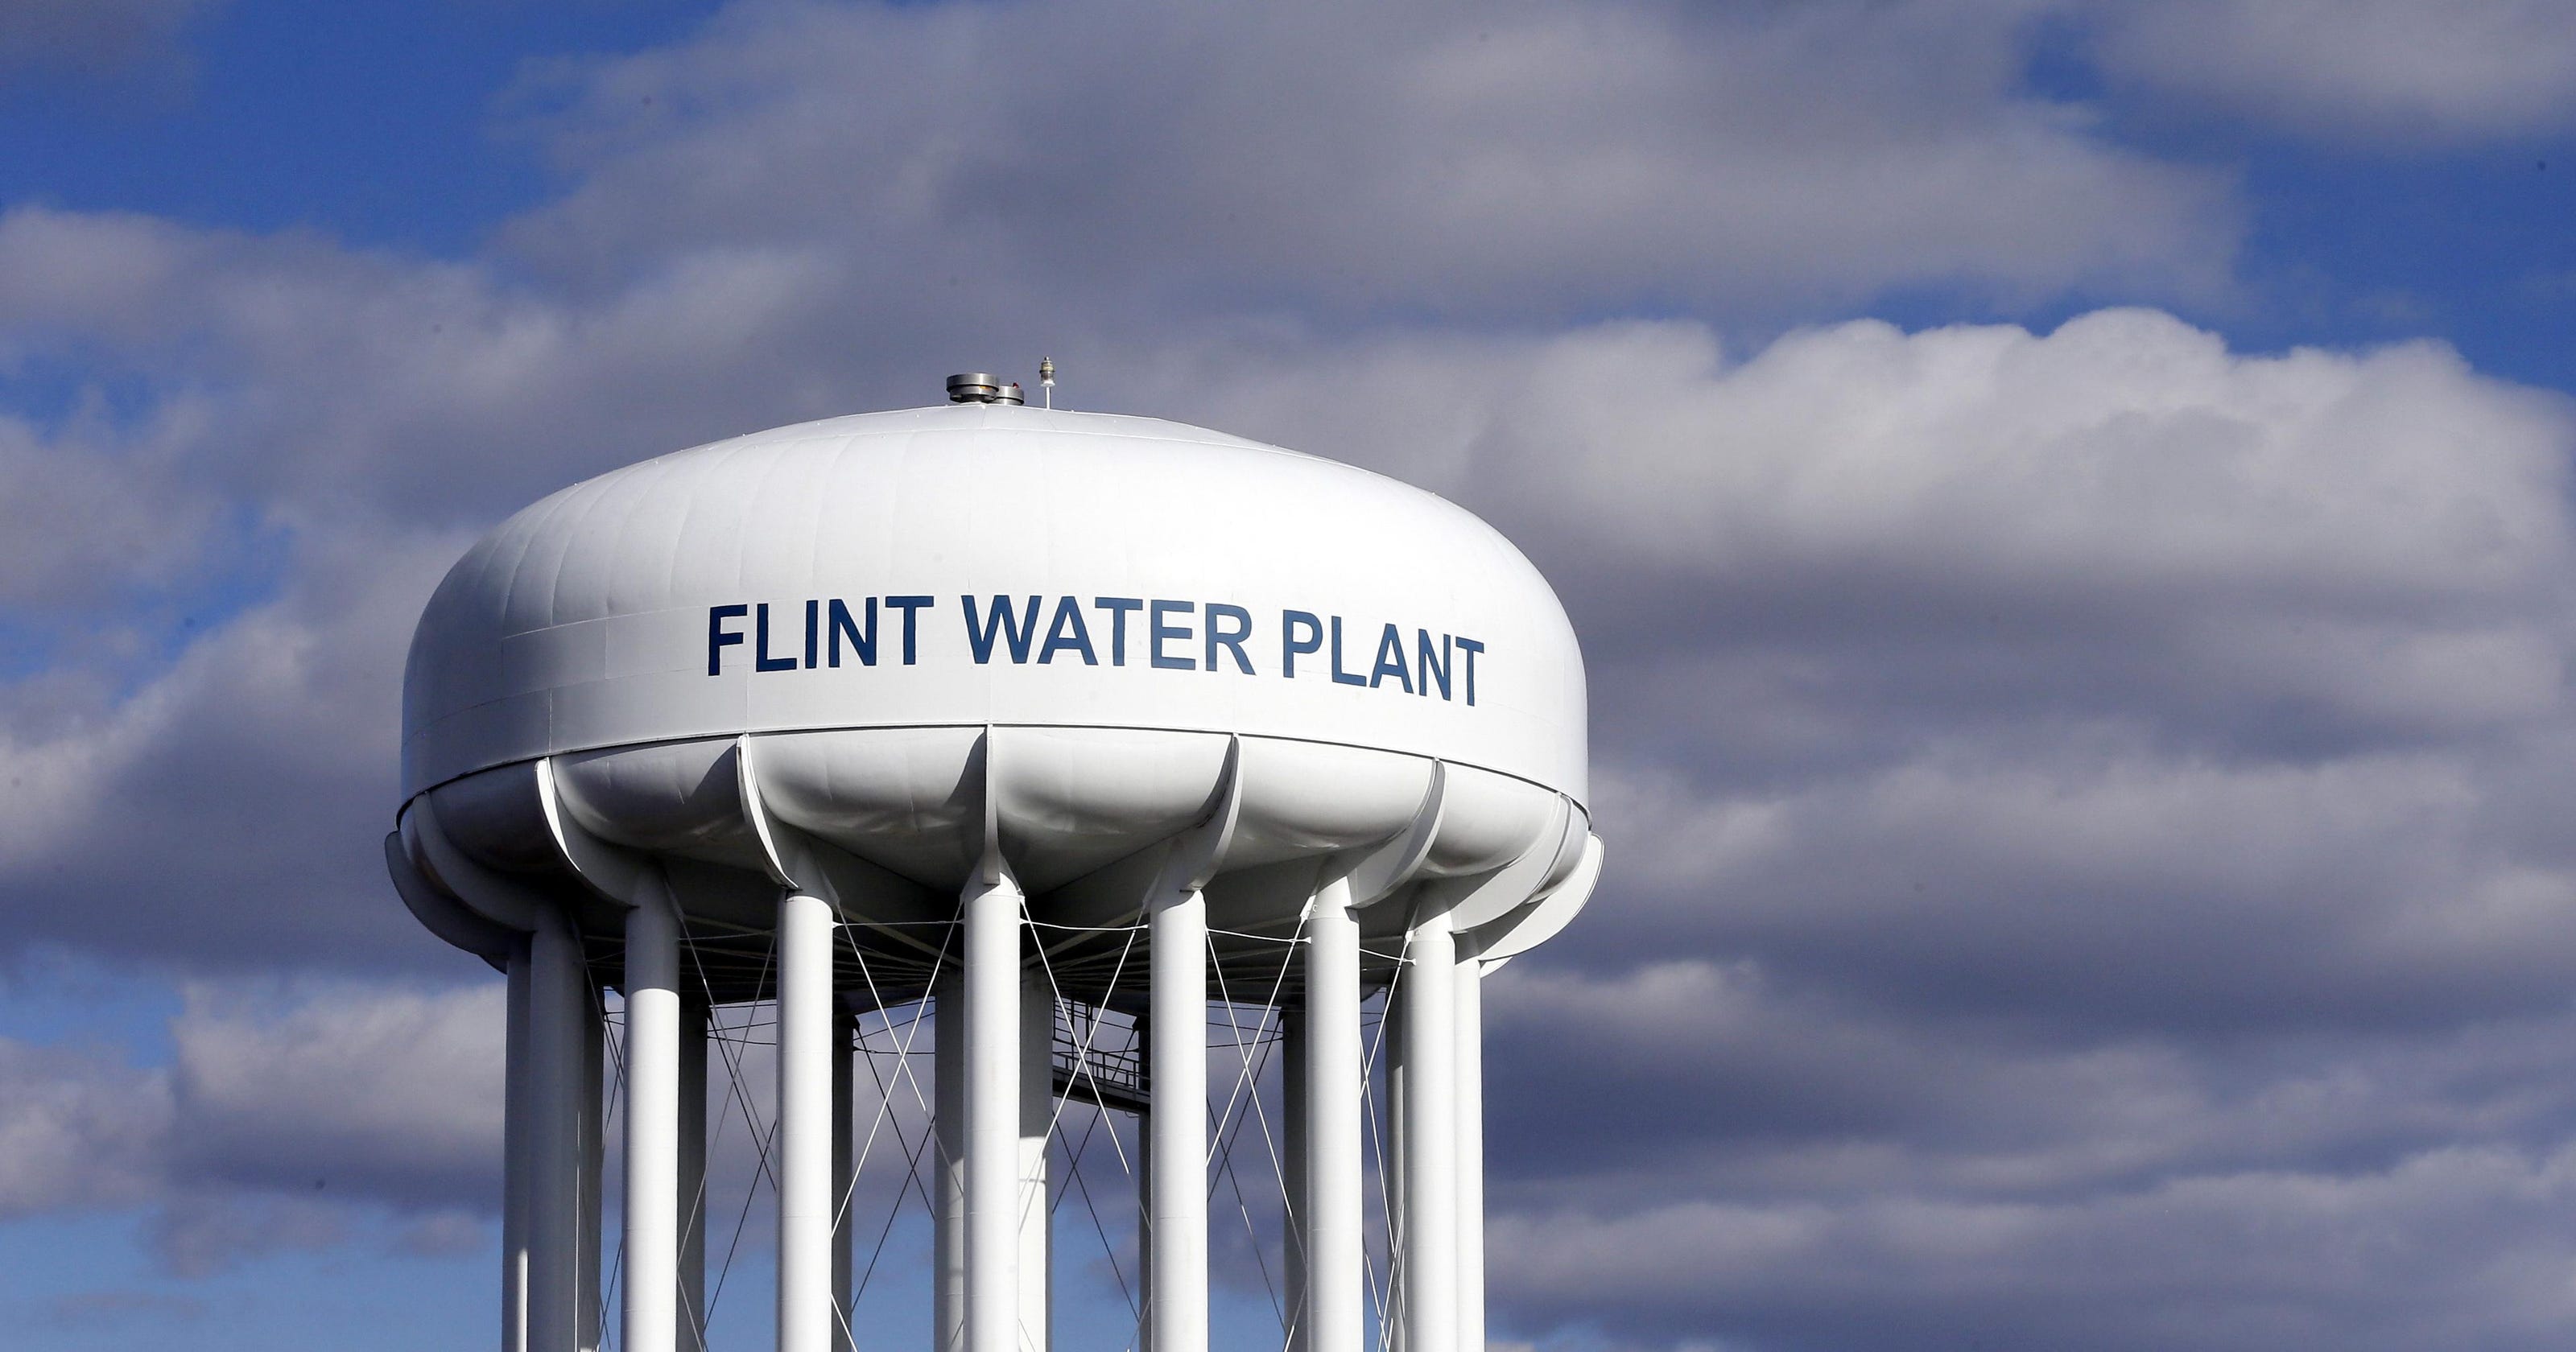 Judge keeps Nessel on Flint water lawsuits despite conflict complaints - The Detroit News